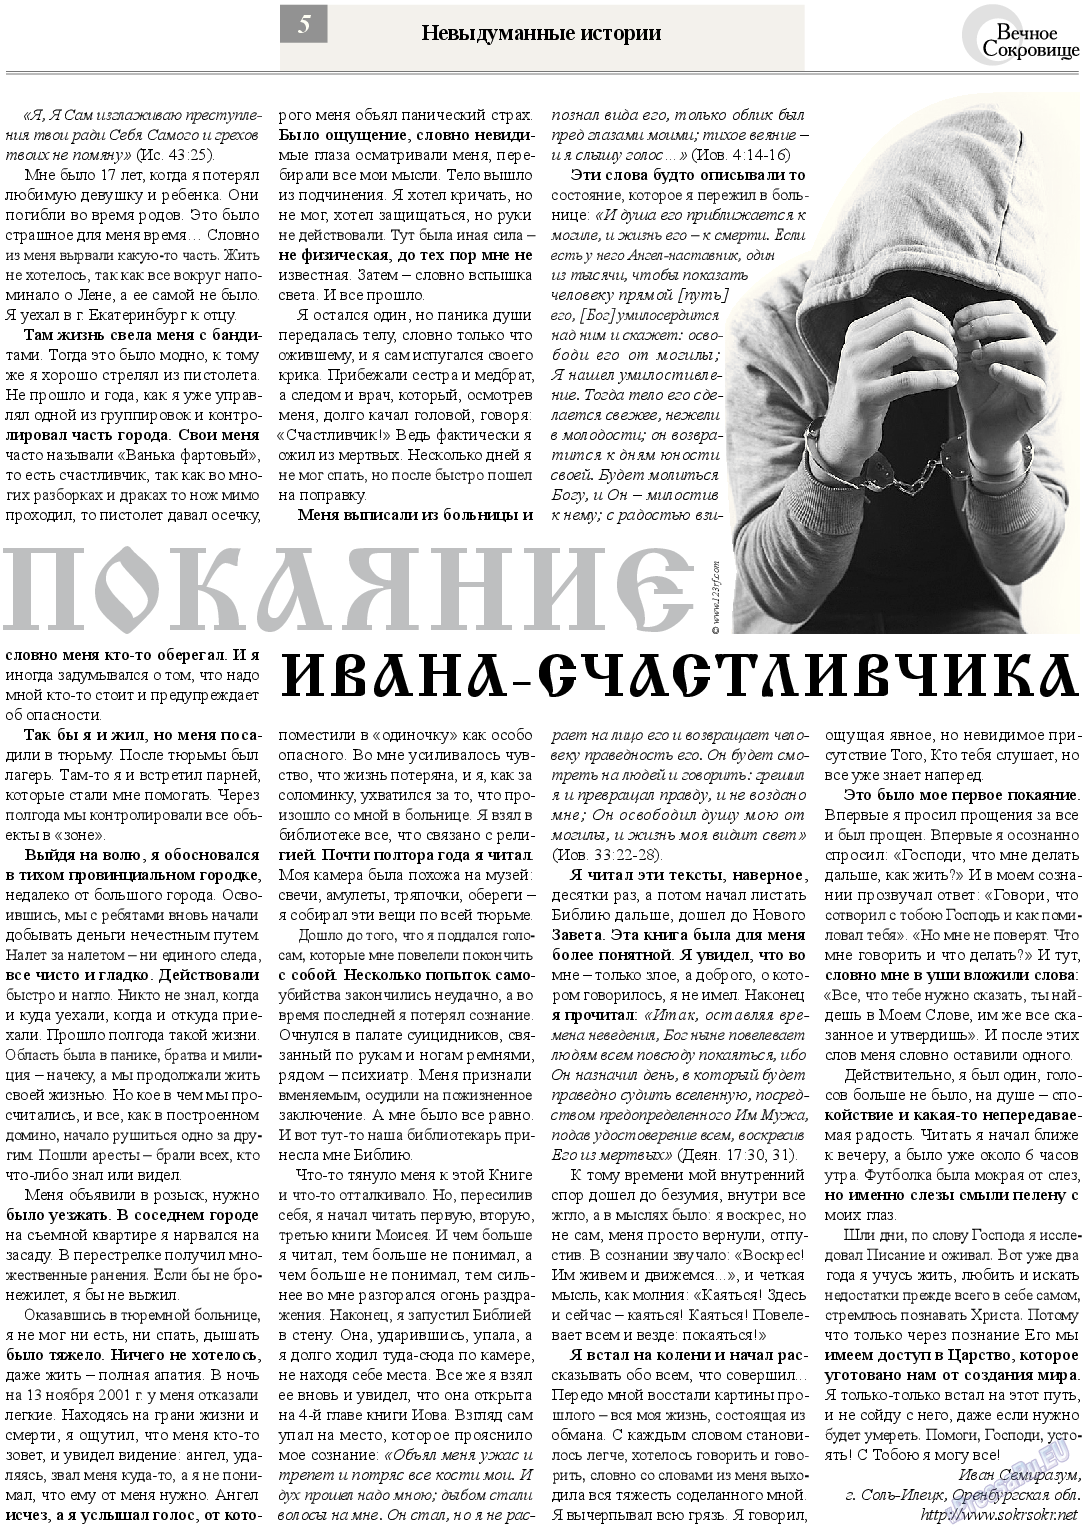 Вечное сокровище, газета. 2013 №4 стр.5